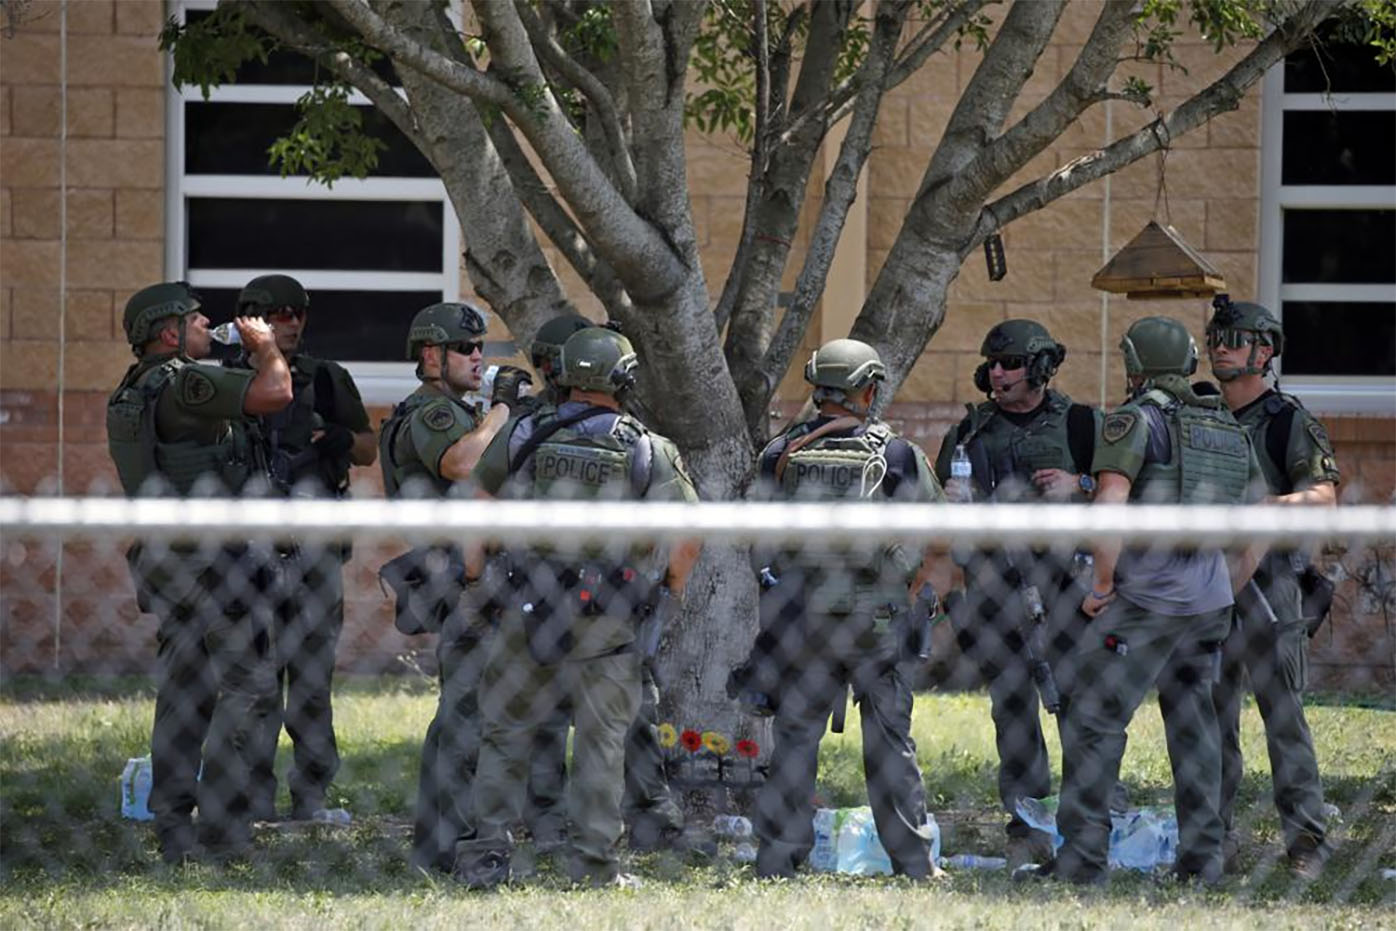   El personal encargado de hacer cumplir la ley se encuentra afuera de la Escuela Primaria Robb luego de un tiroteo, el 24 de mayo de 2022, en Uvalde, Texas. 